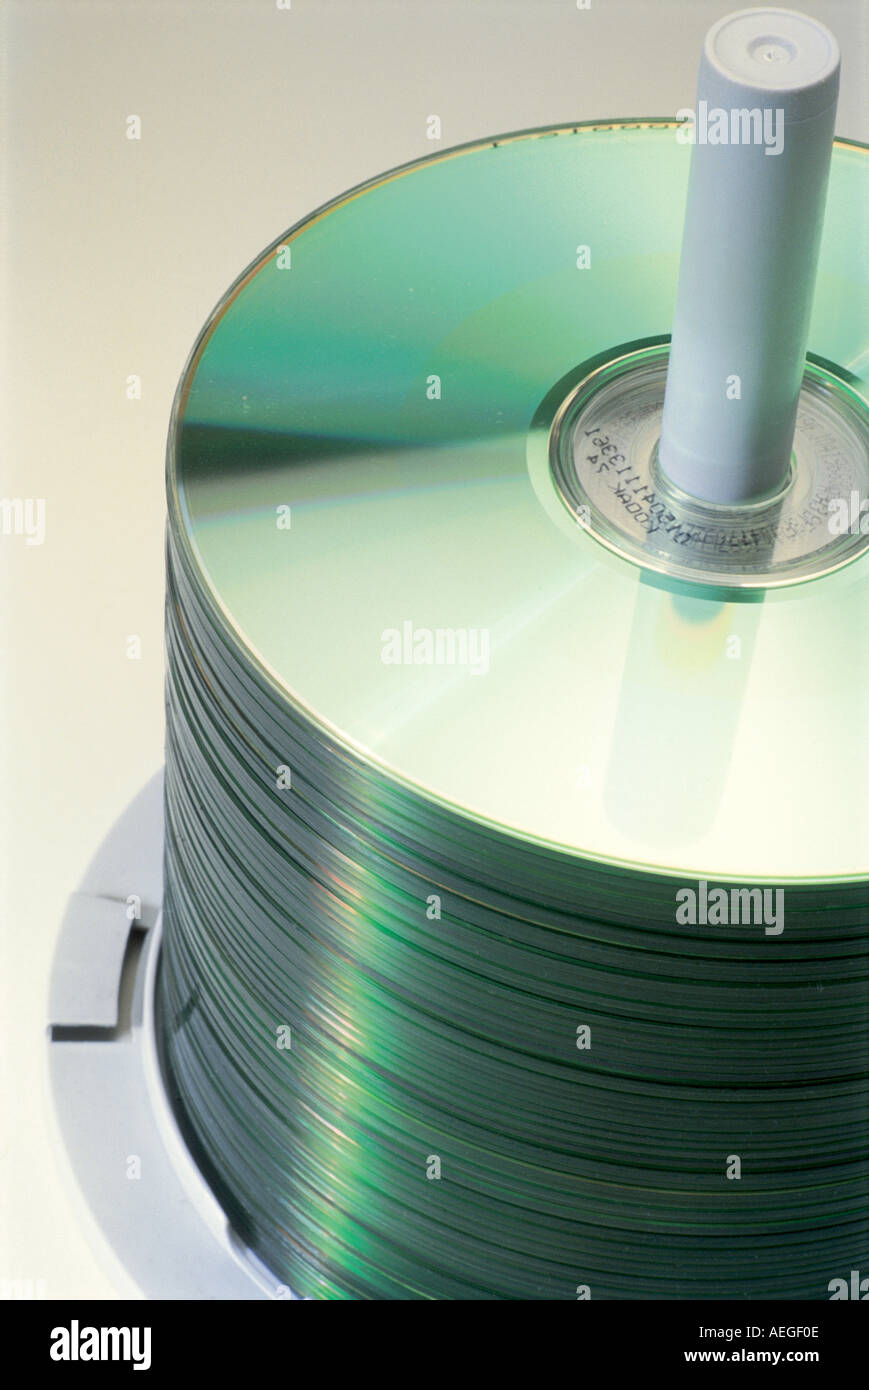 Cd di Office room cd compact disc riproduzione dischi copie pila media storage round lucido metallico riflettente i dati musicali elemento di ritegno Foto Stock